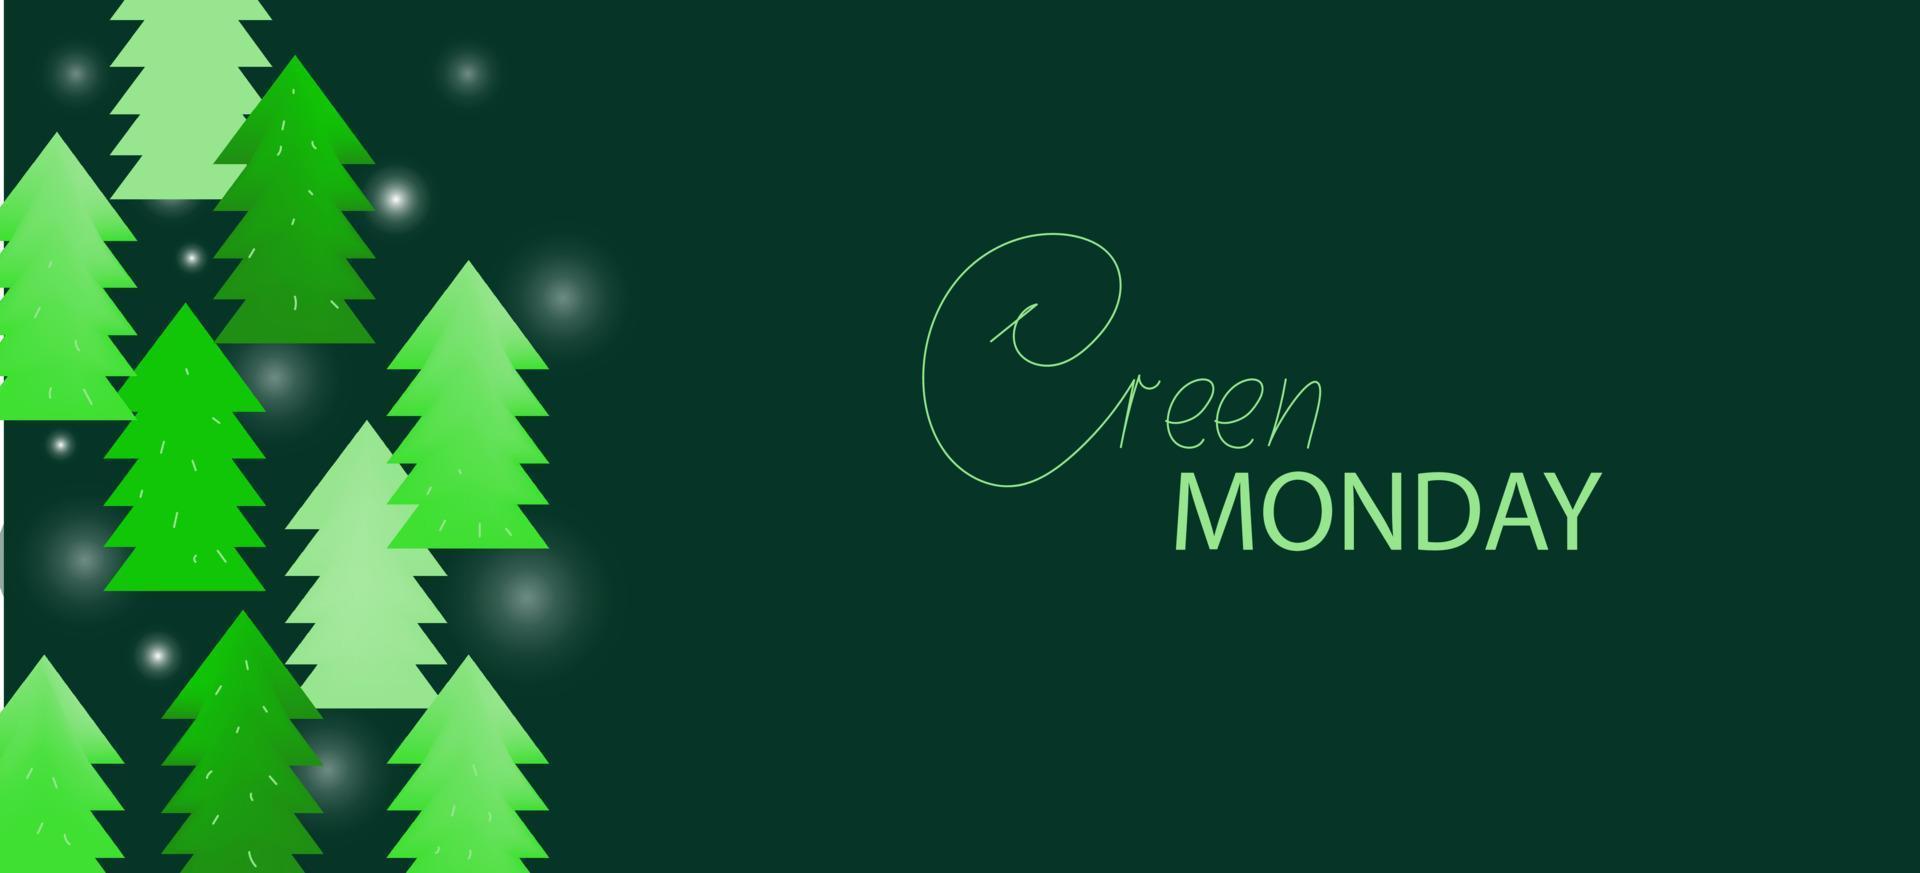 groen maandag uitverkoop boom achtergrond. vectpr 3d, tekenfilm illustratievoor spandoek. vector